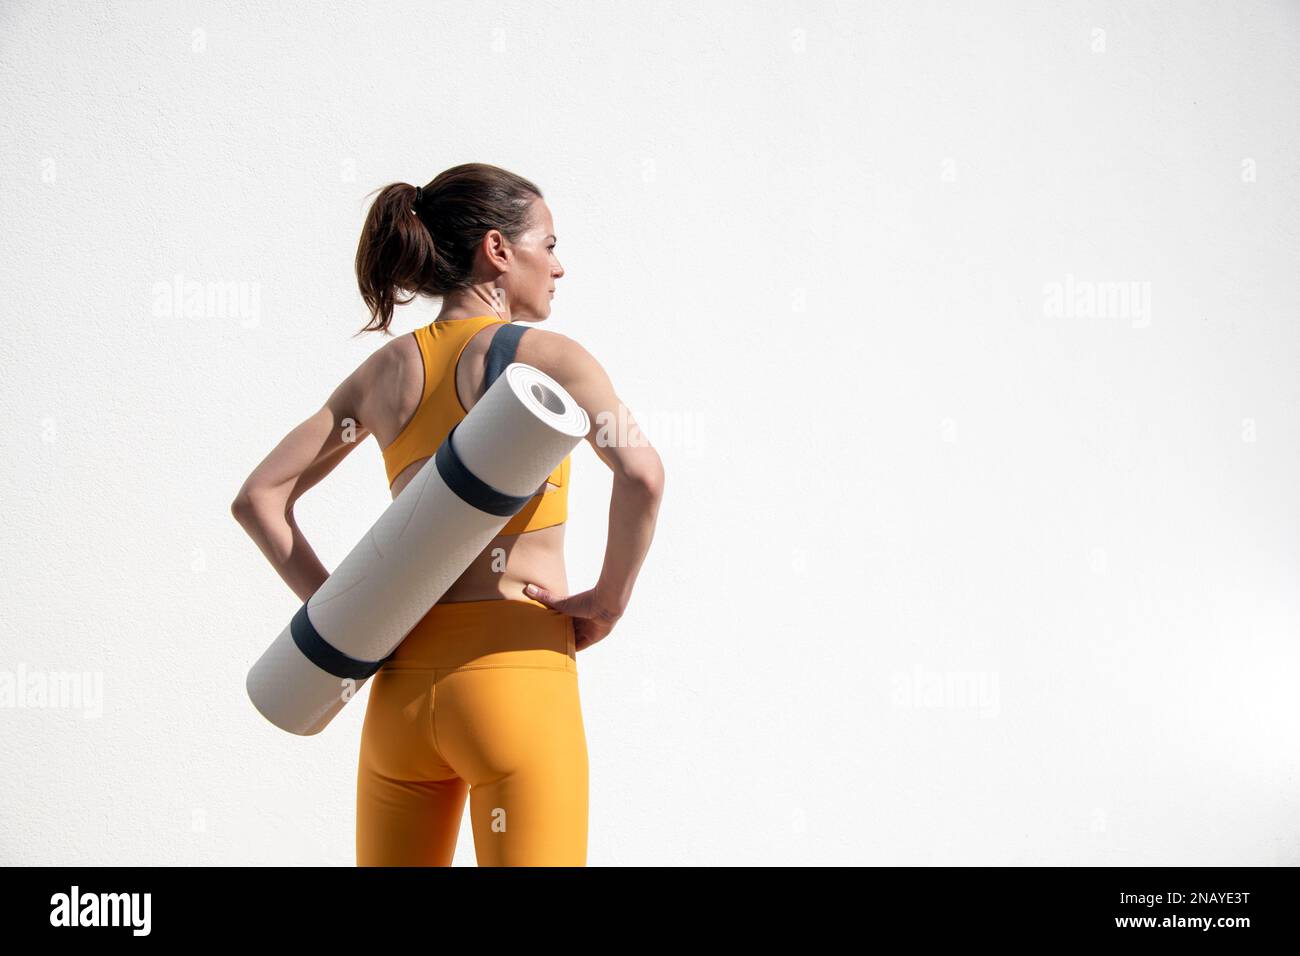 Mujer deportiva que lleva un yoga, estera de ejercicio, fuera por una pared blanca. Foto de stock